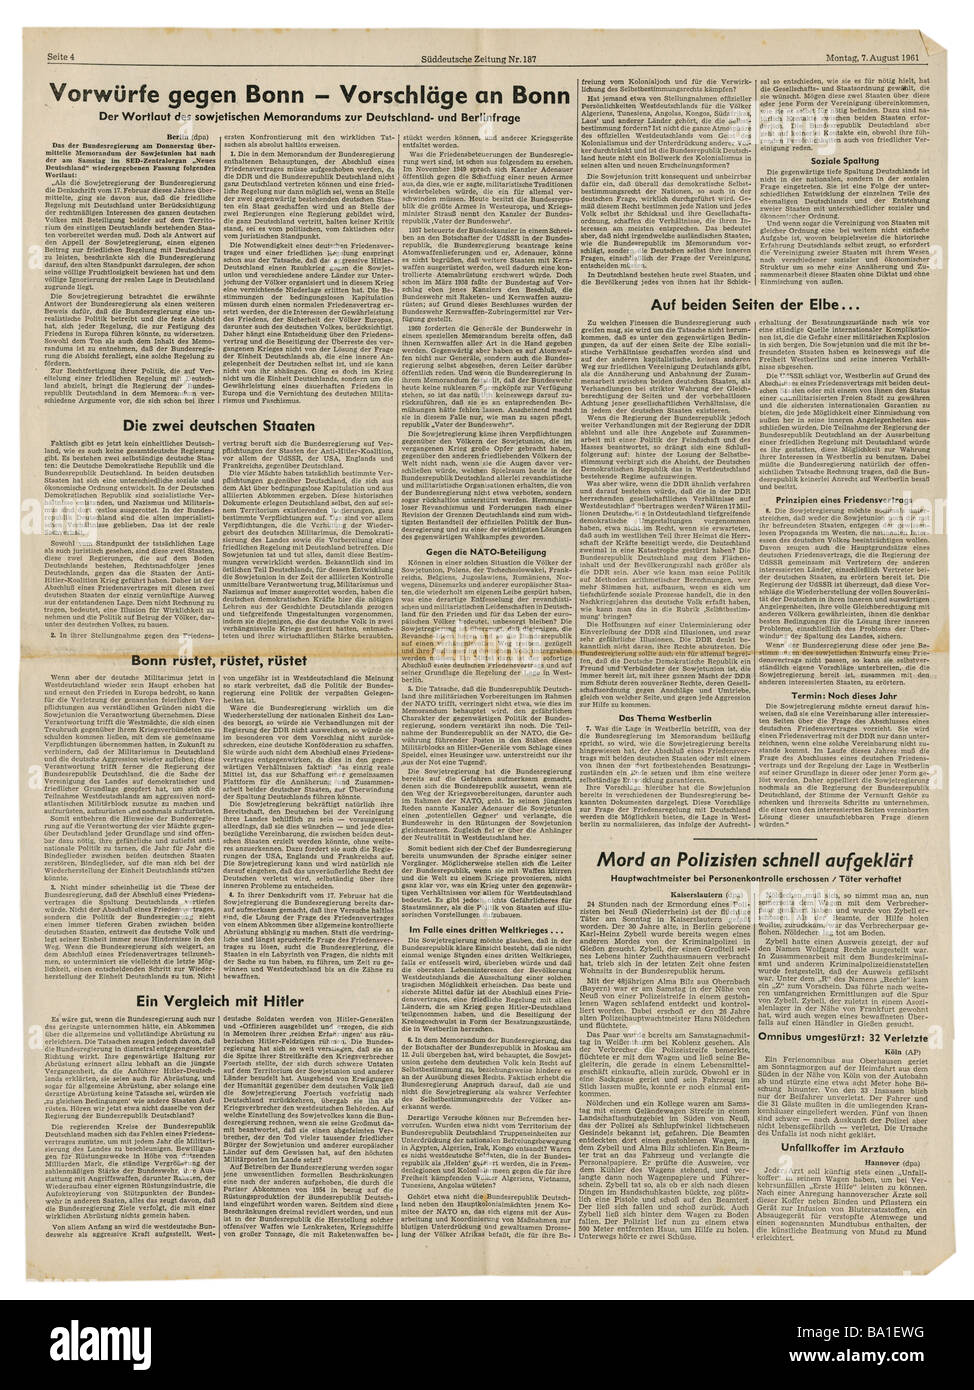 Prensa/medios de comunicación, revistas, 'üddeutsche Zeitung', Munich, volumen 17, número 187, lunes 7.8.1961, artículo, Foto de stock